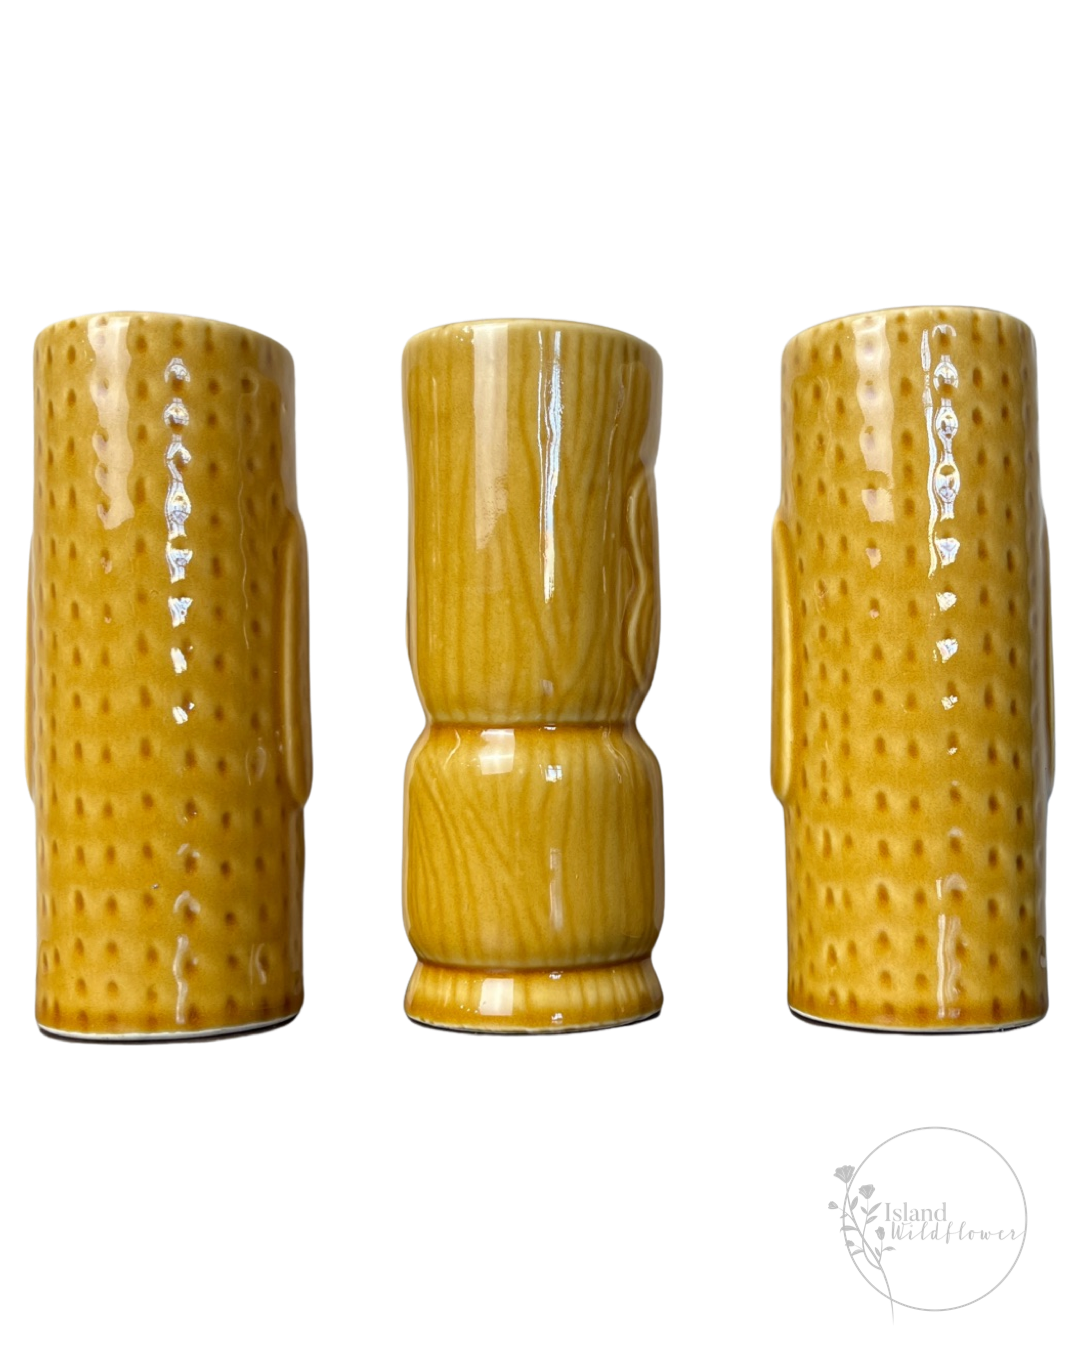 Rear view: Exotic Tiki Mug Trio - Set of Three Ceramic Tiki Mugs in Golden Brown Glaze